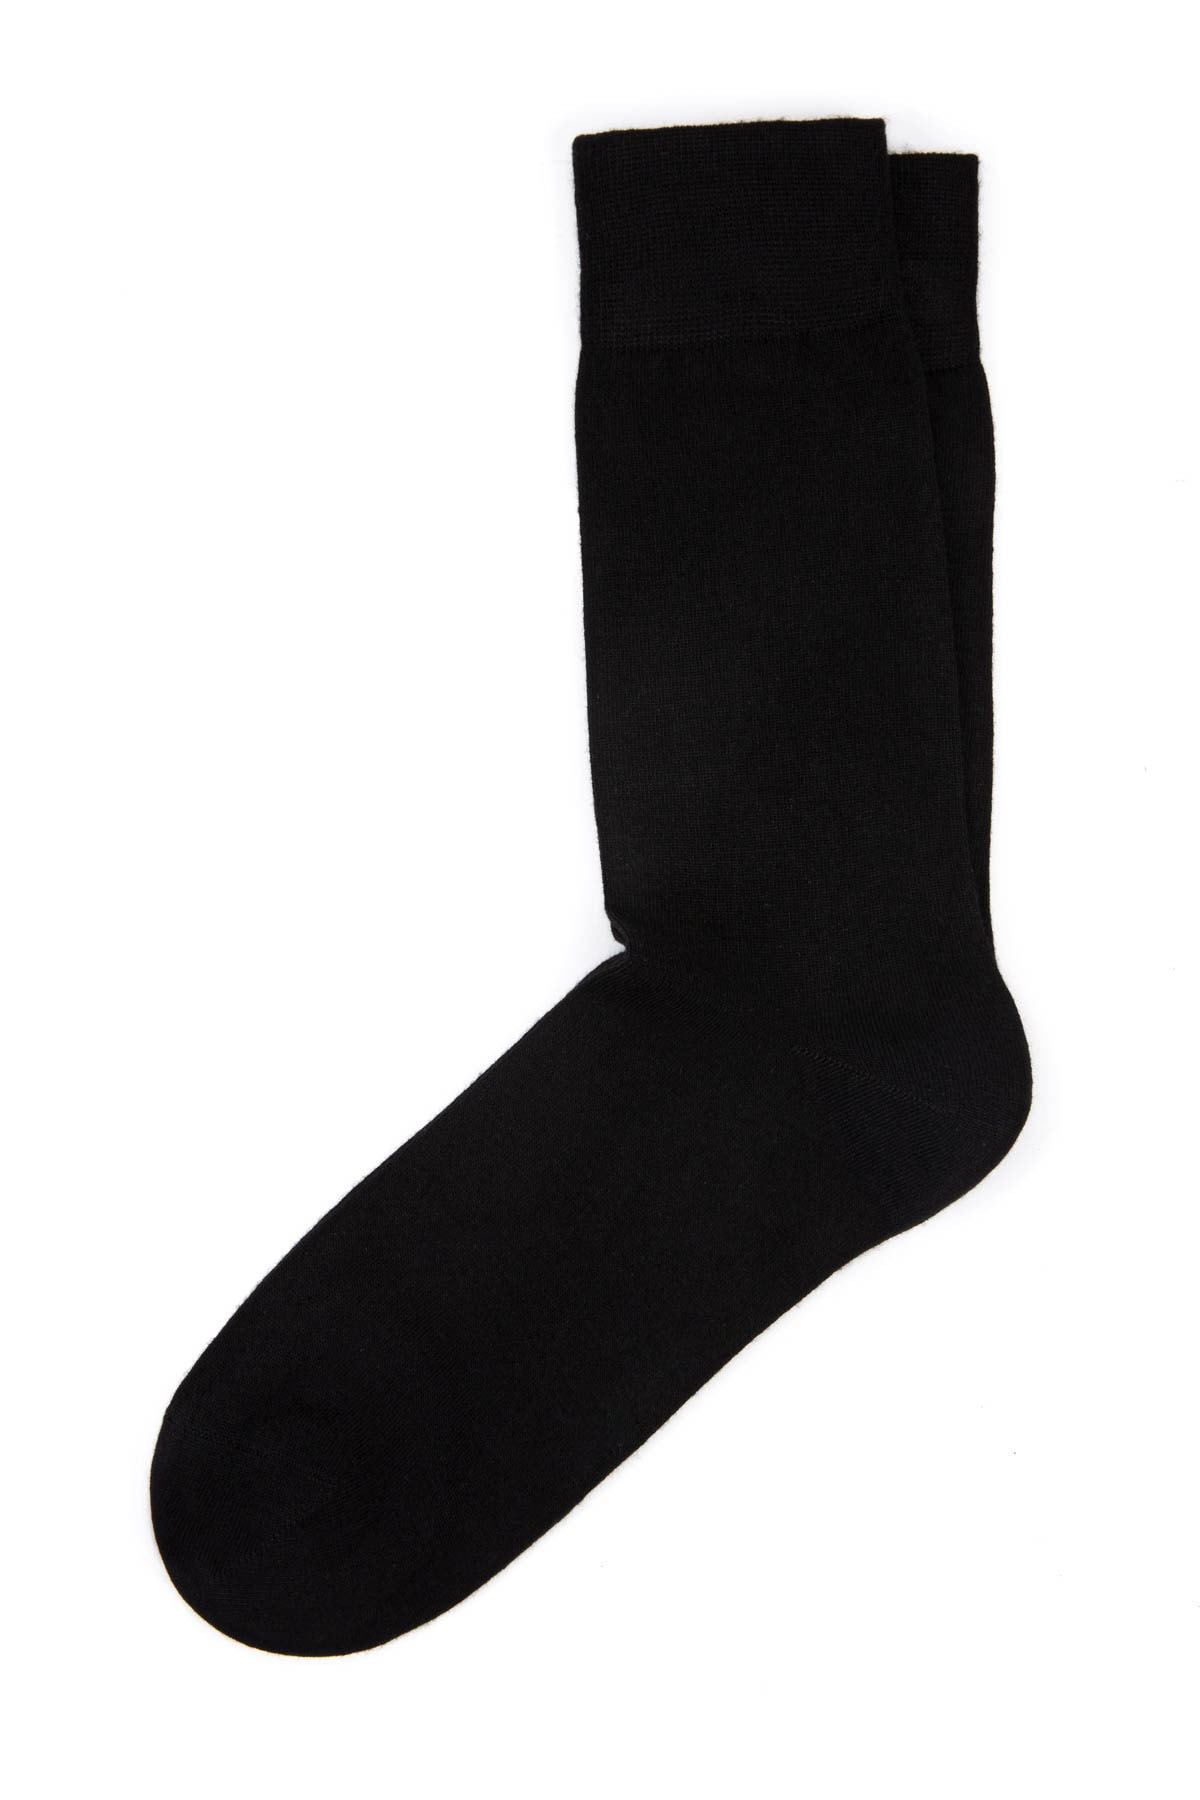 7 Adet Siyah Erkek Uzun Çorap (40-44)